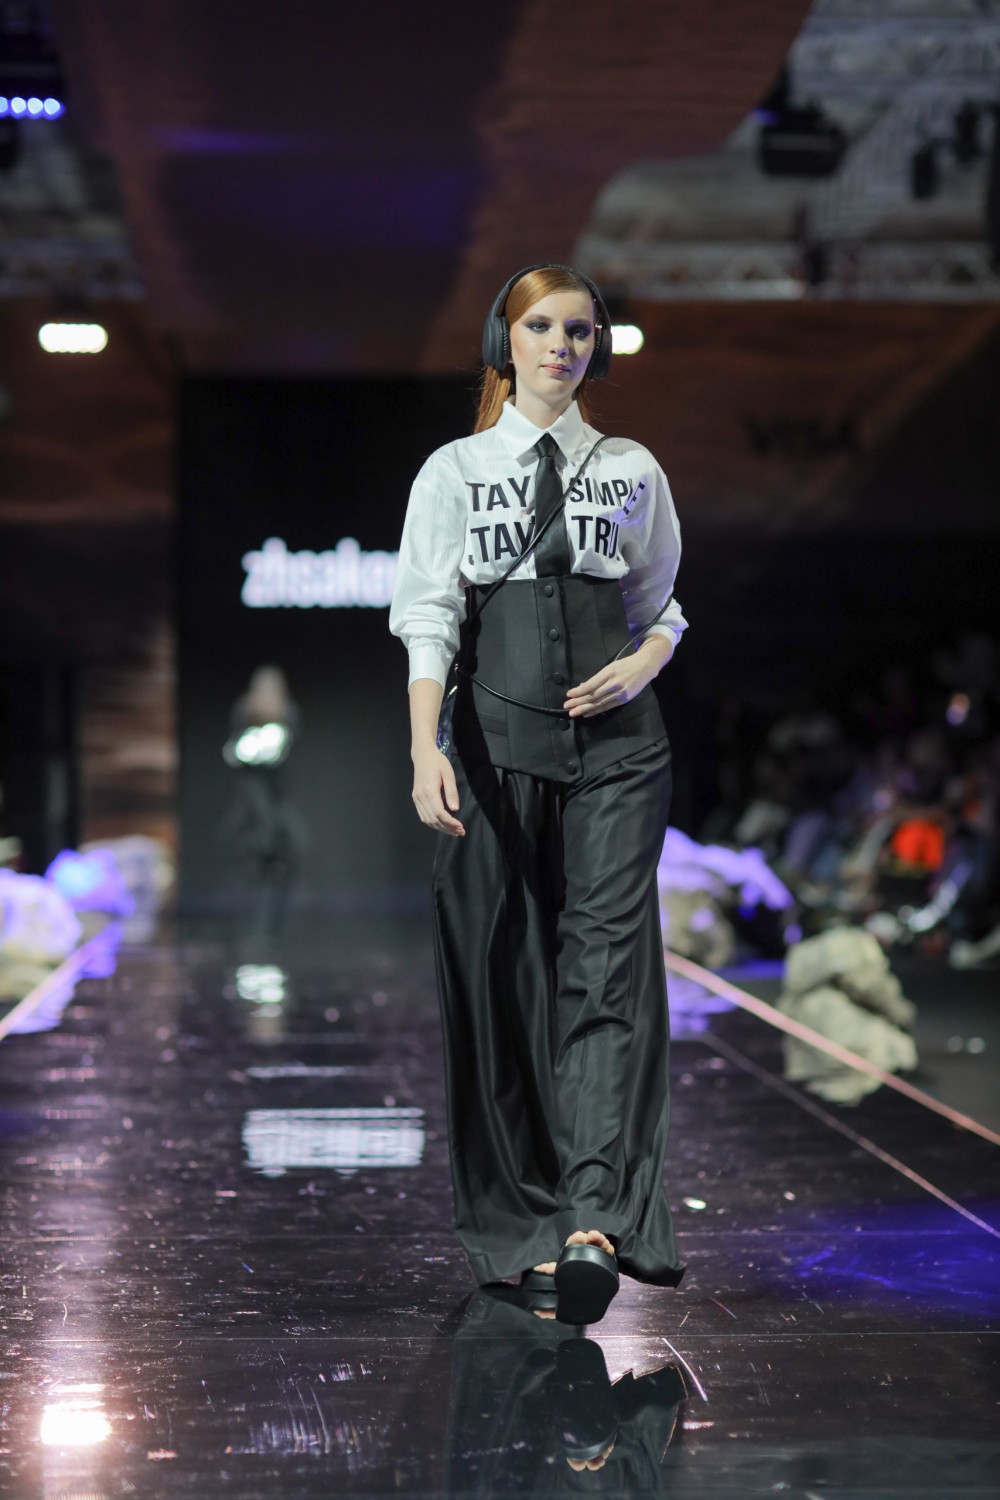 Информационный шум, воспоминания из детства и новый офисный дресс-код: чем запомнился второй день Visa Fashion Week Almaty